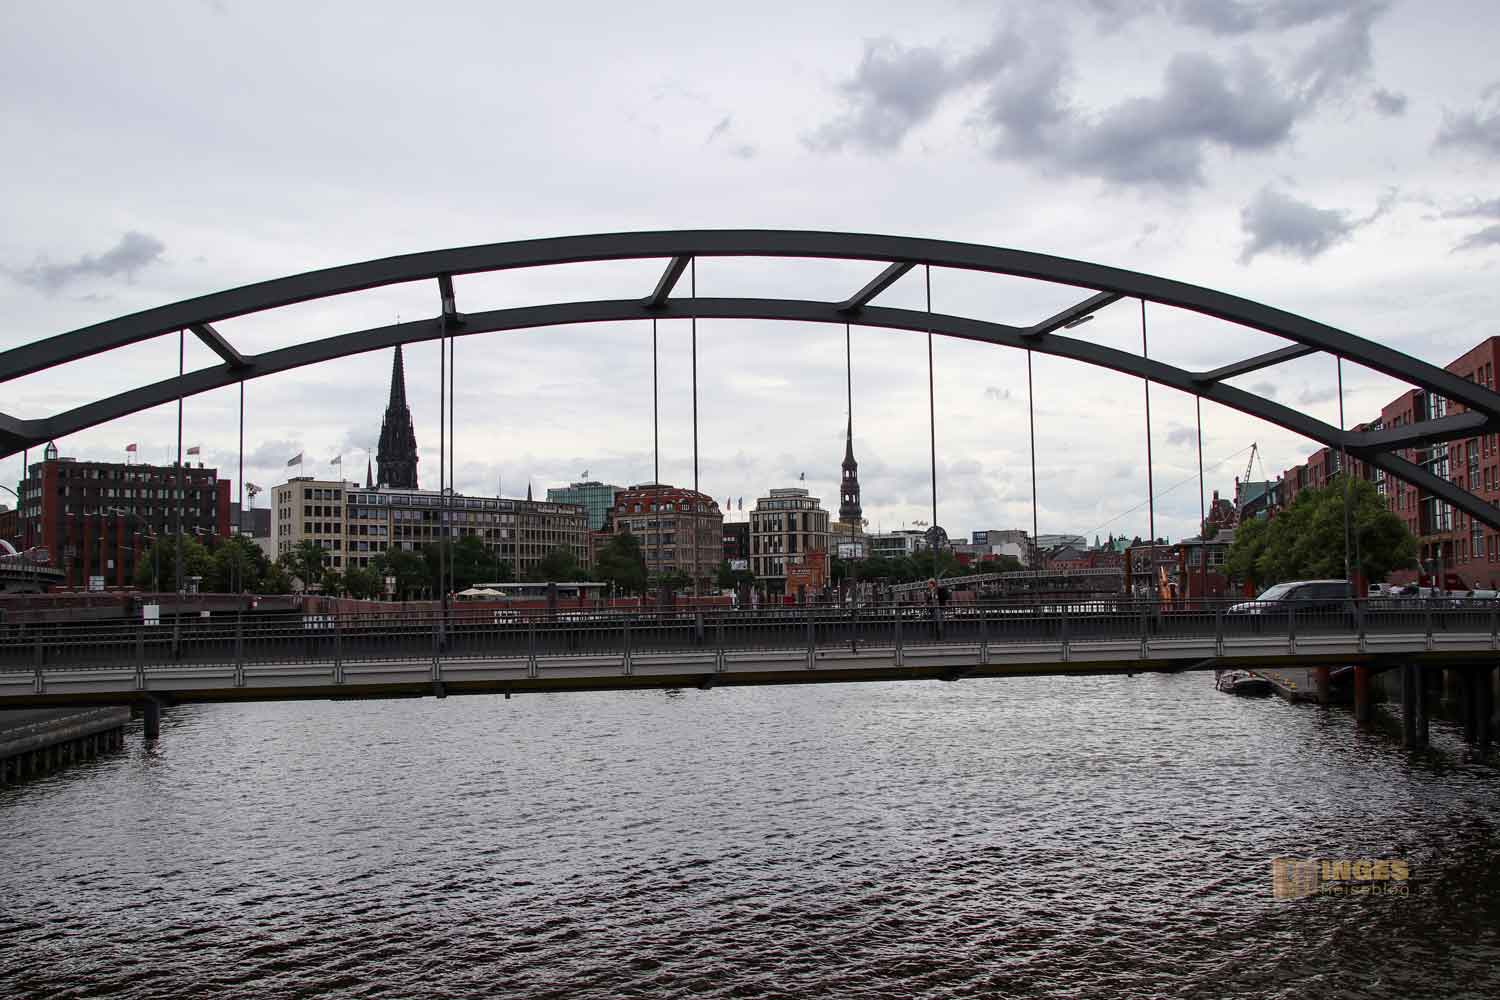 Brücken zur Speicherstadt 8775